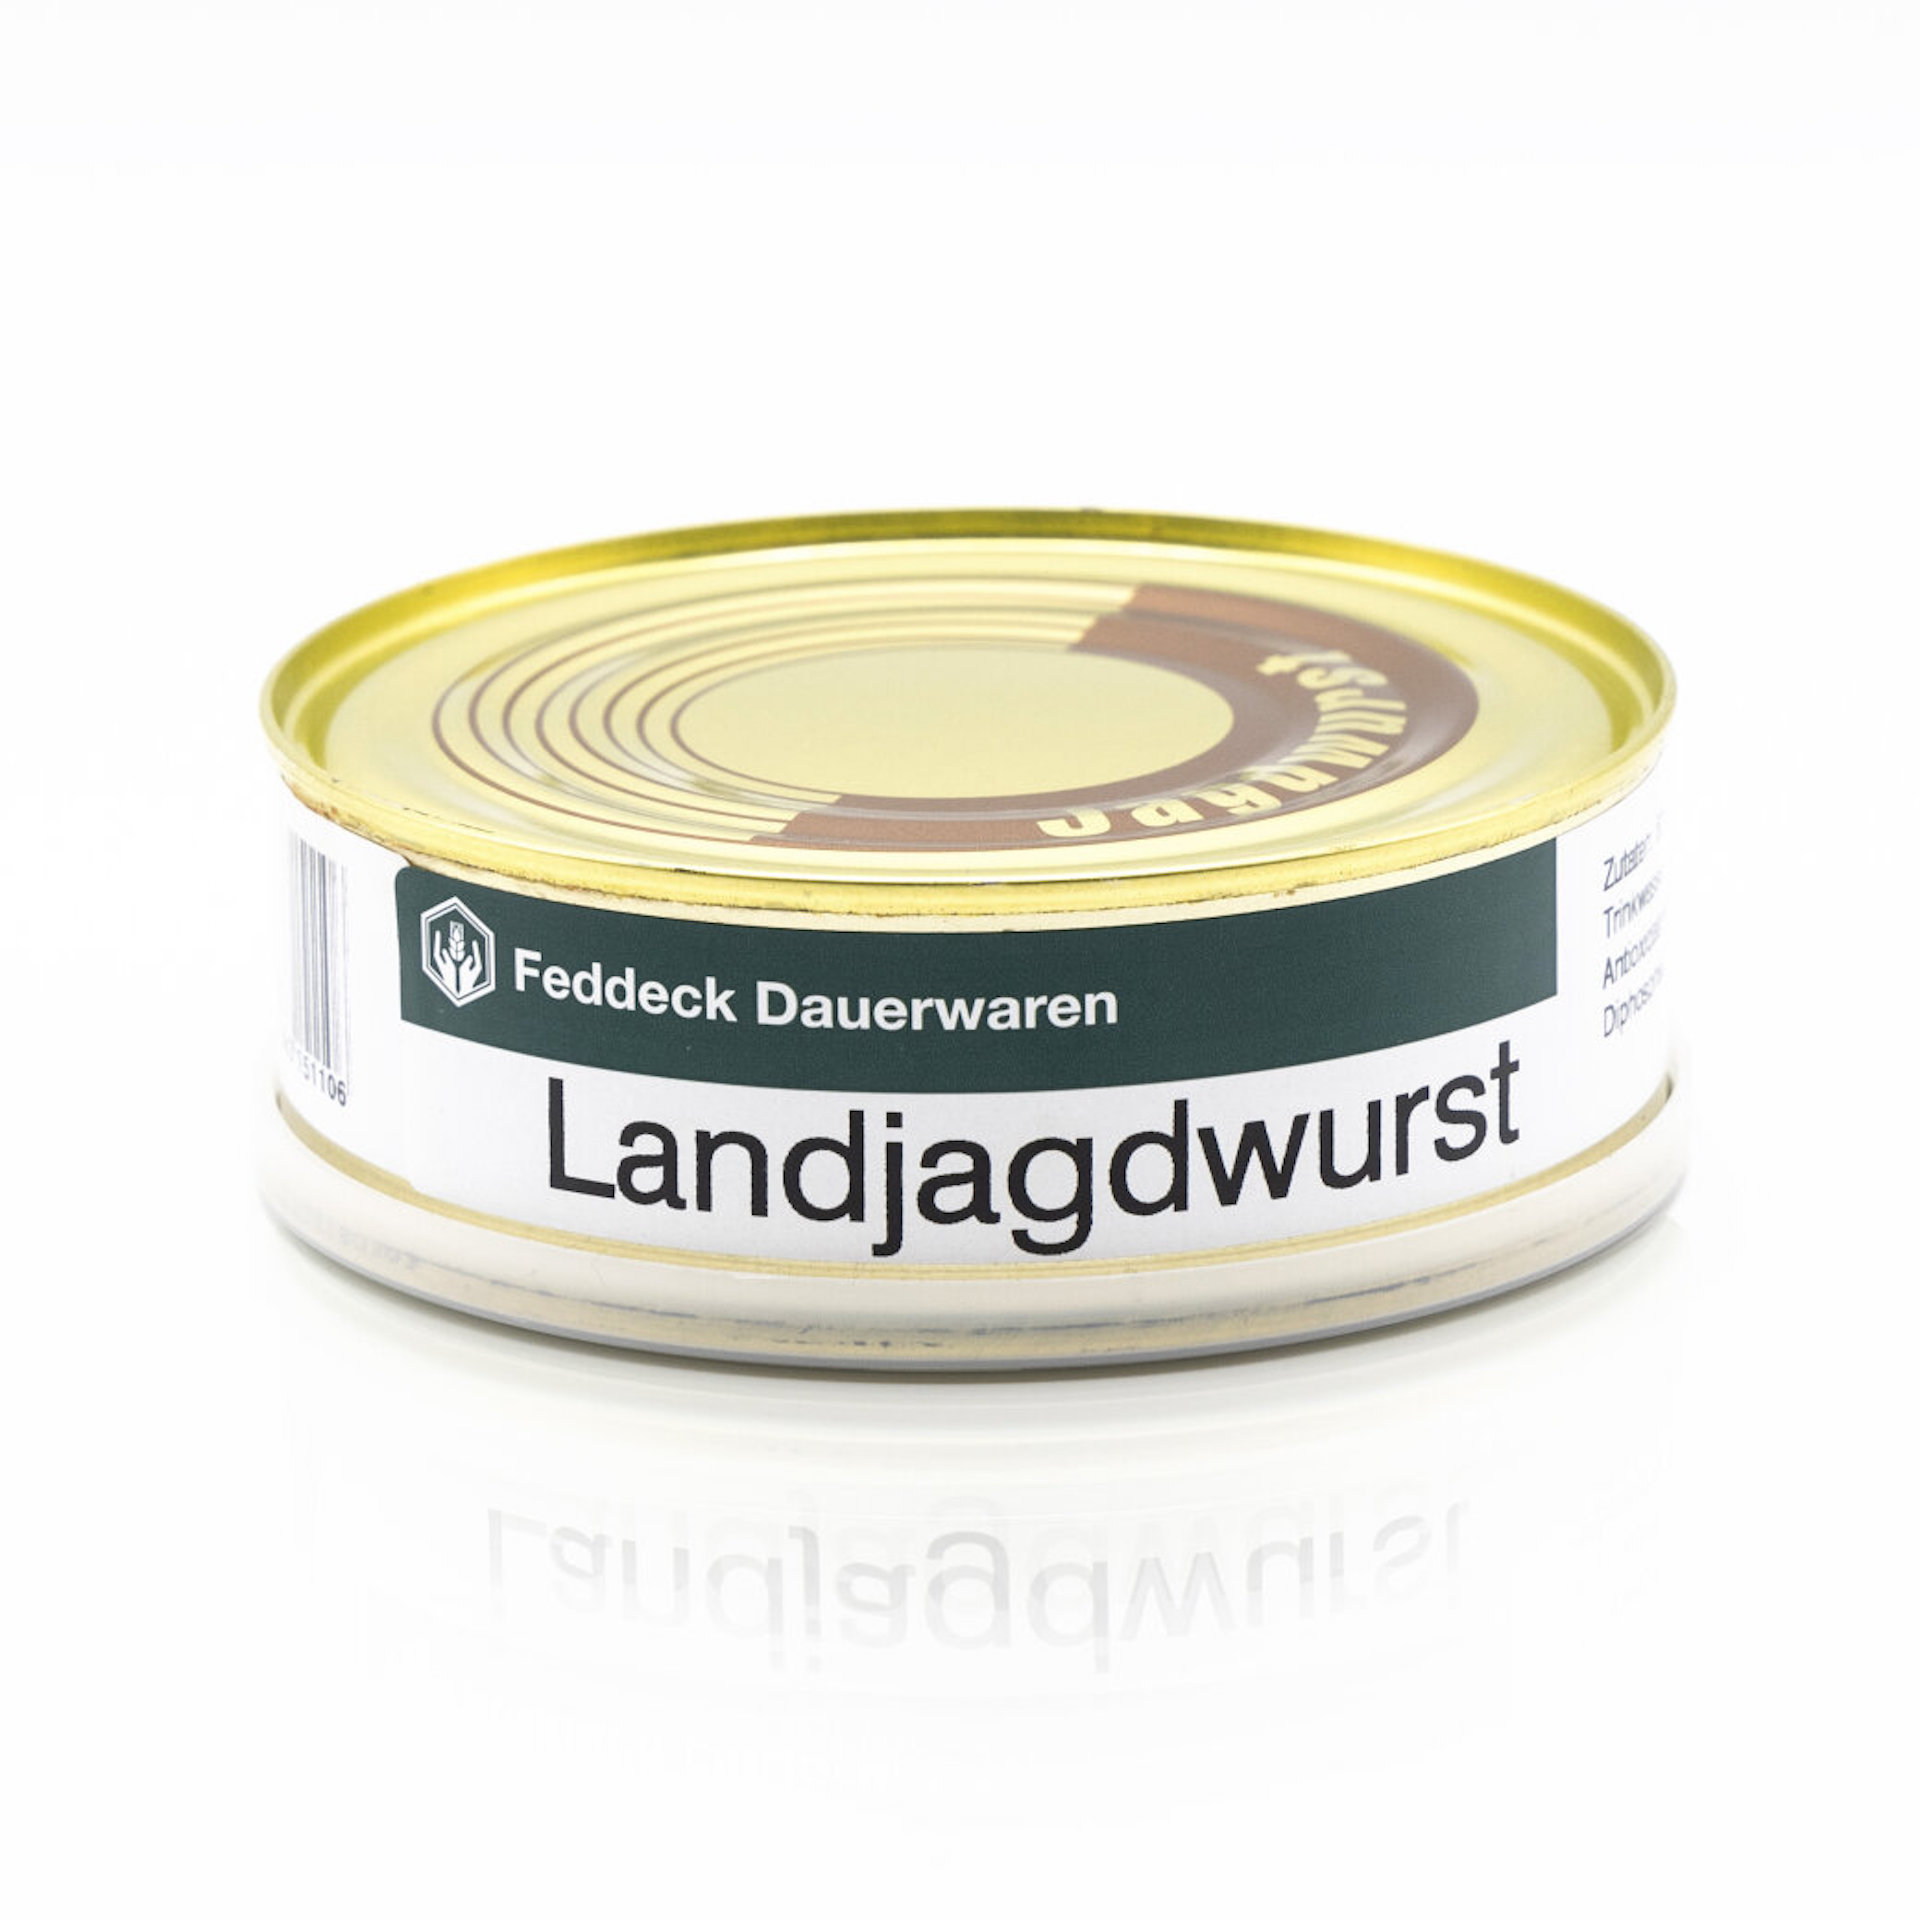 FEDDECK Landjagdwurst Dosenwurst (200g)